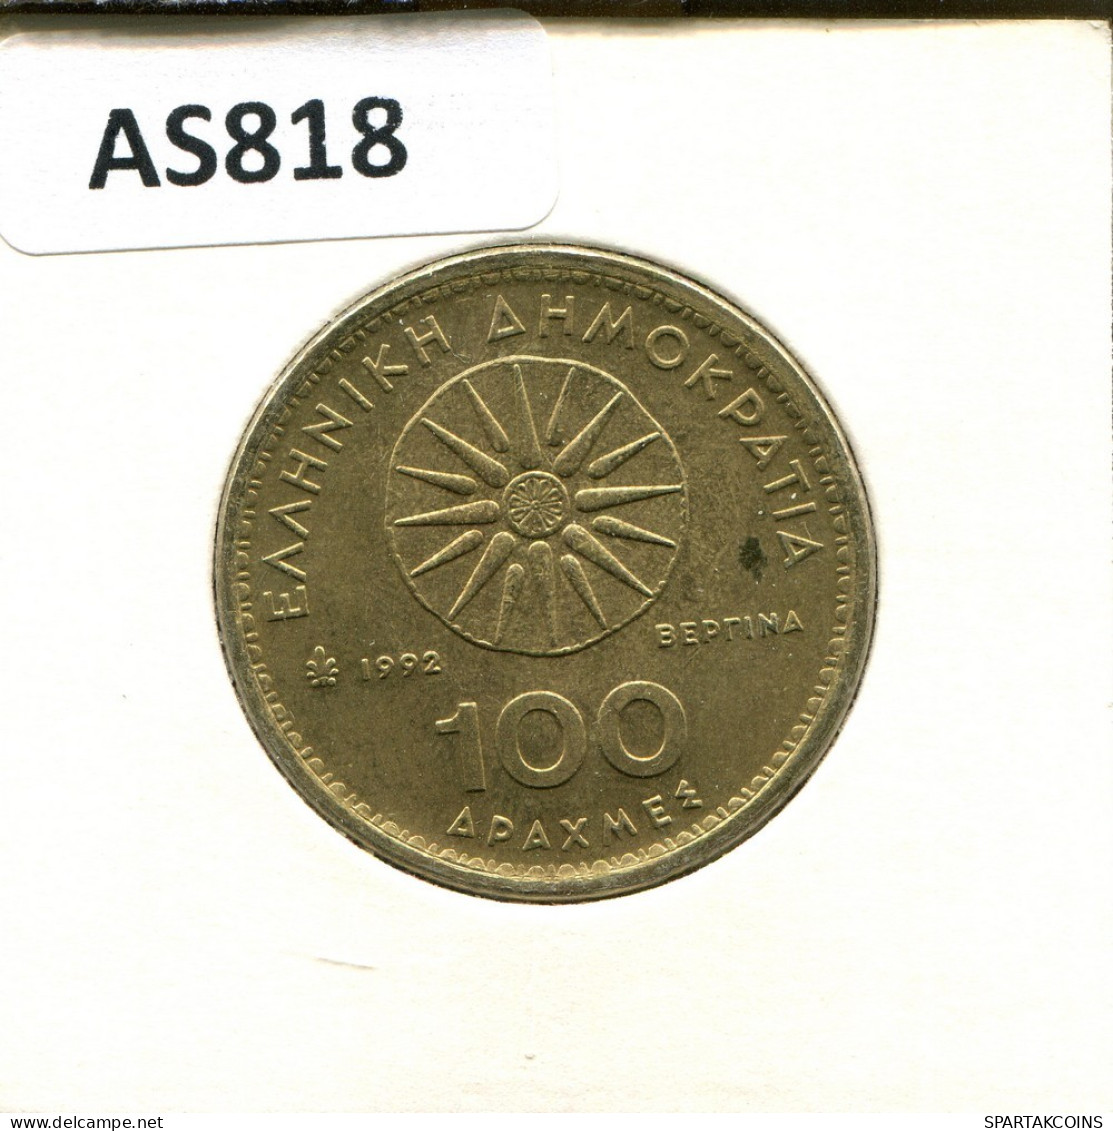 100 DRACHMES 1992 GREECE Coin #AS818.U.A - Greece